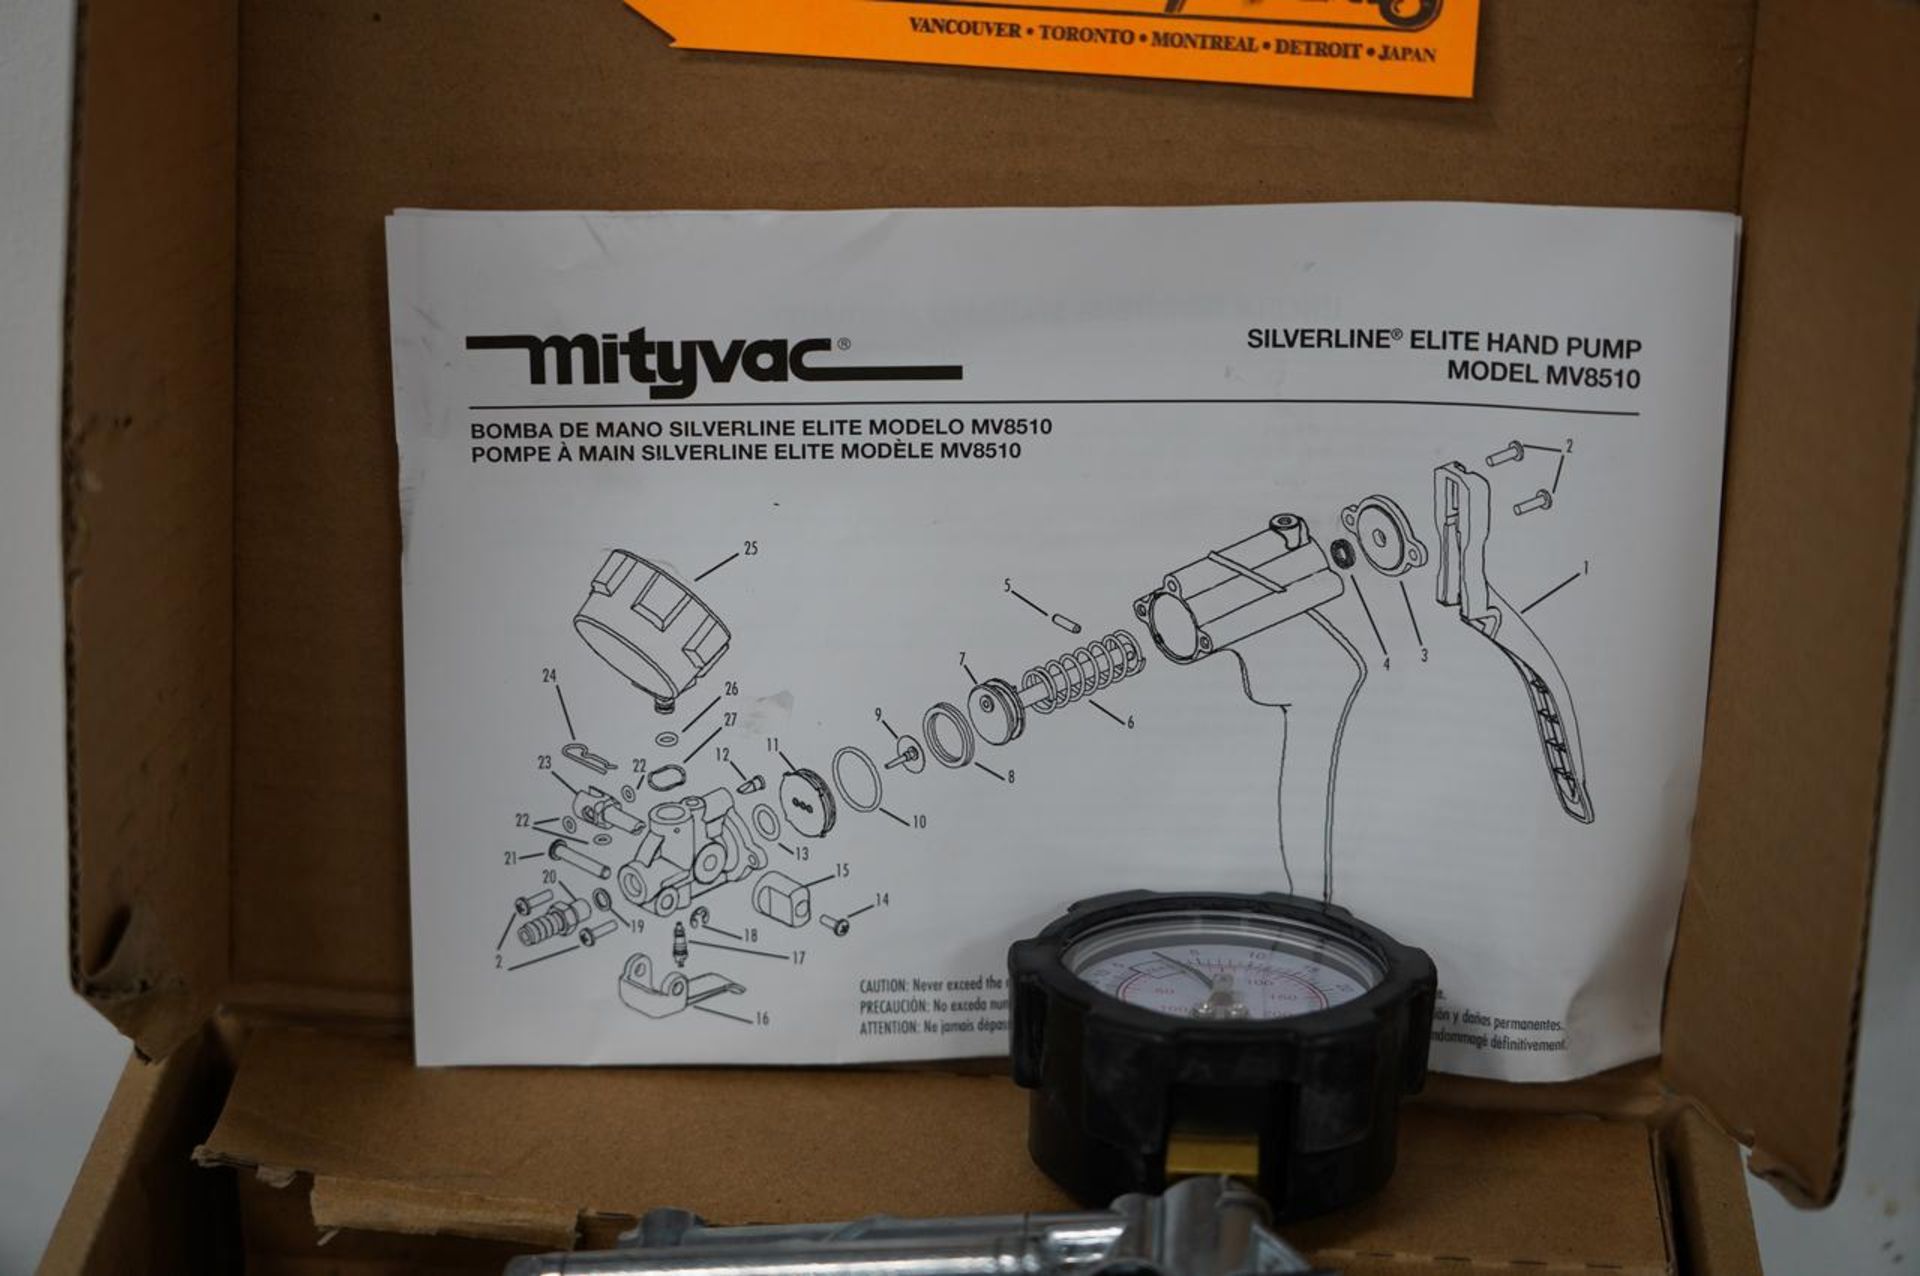 Mityvac MV8510 Silverline Elite Hand Pump - Image 3 of 3